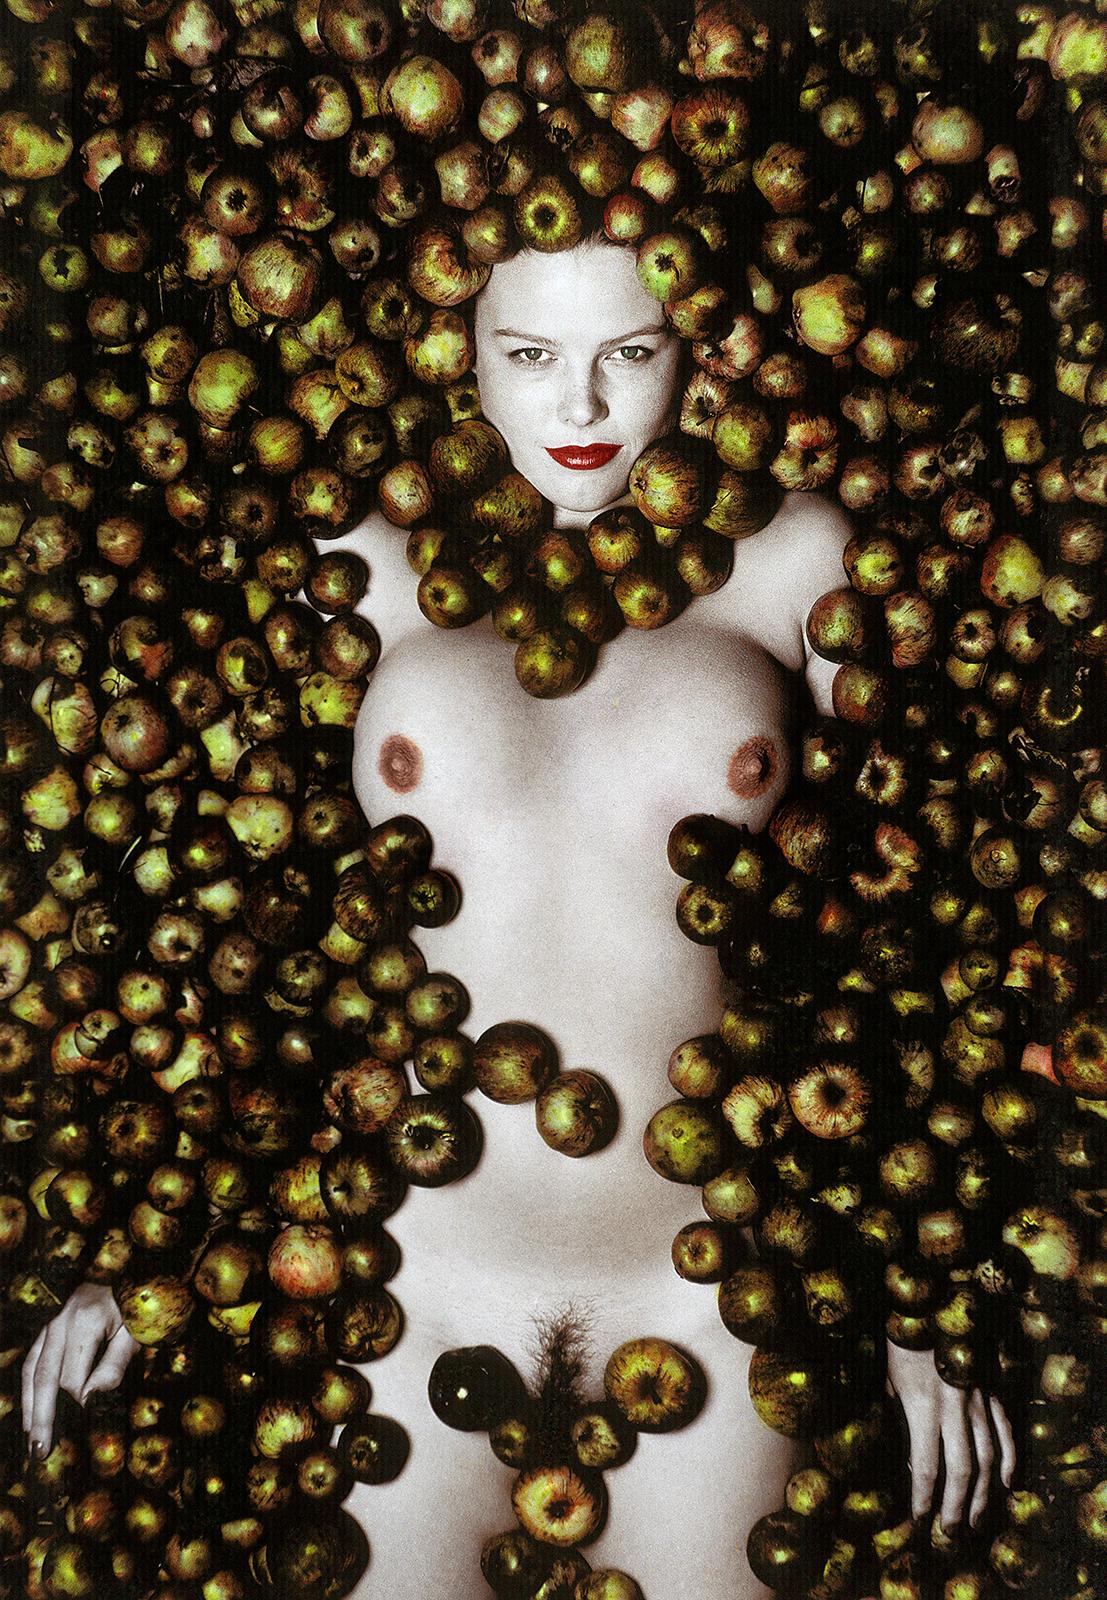 Apples - Impression de natures mortes en édition limitée signée, photo en couleur, modèle